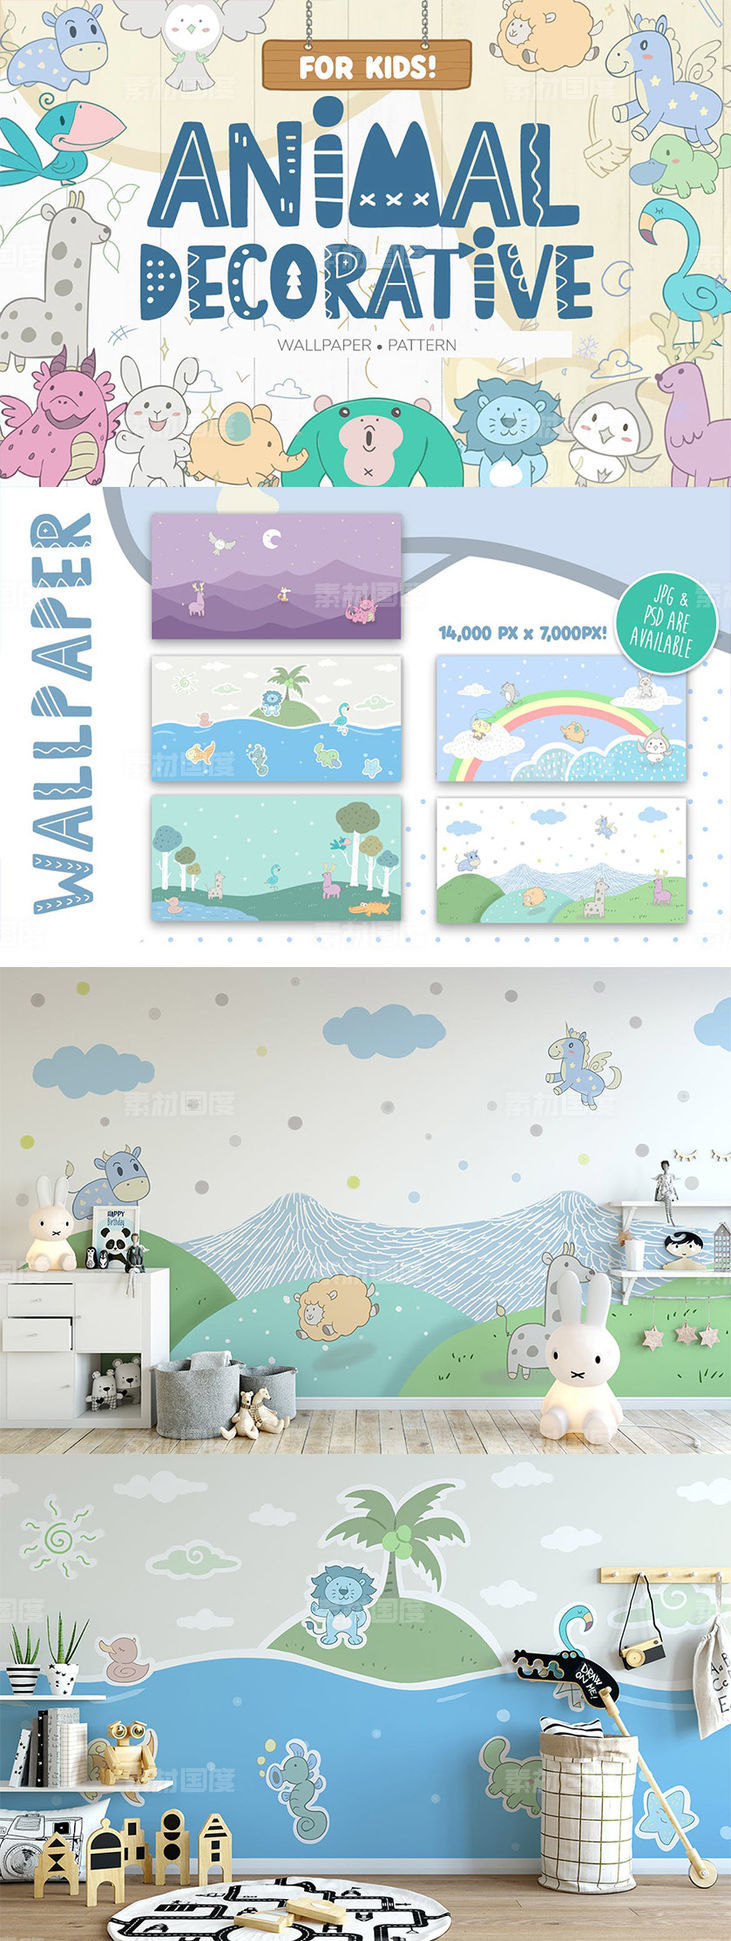 儿童墙纸动物装饰图案设计素材【PSD,JPG】